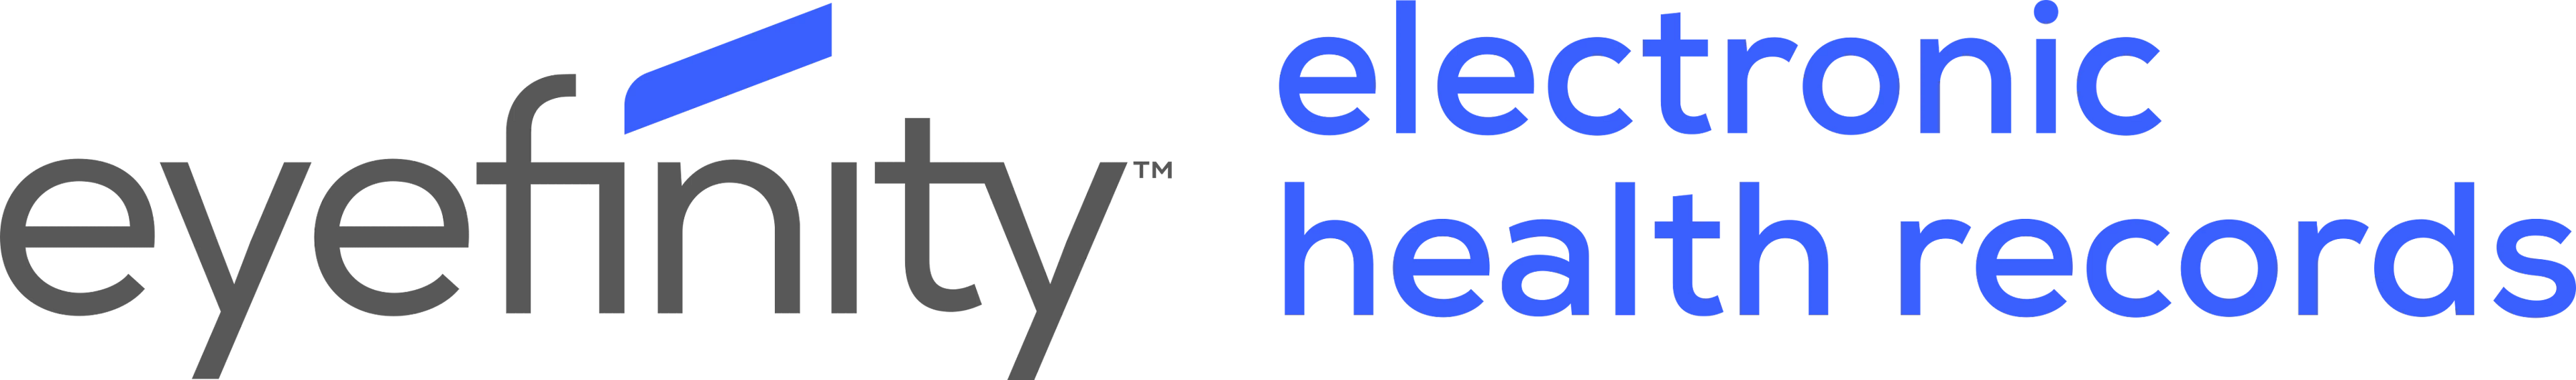 Eyefinity EHR Logo